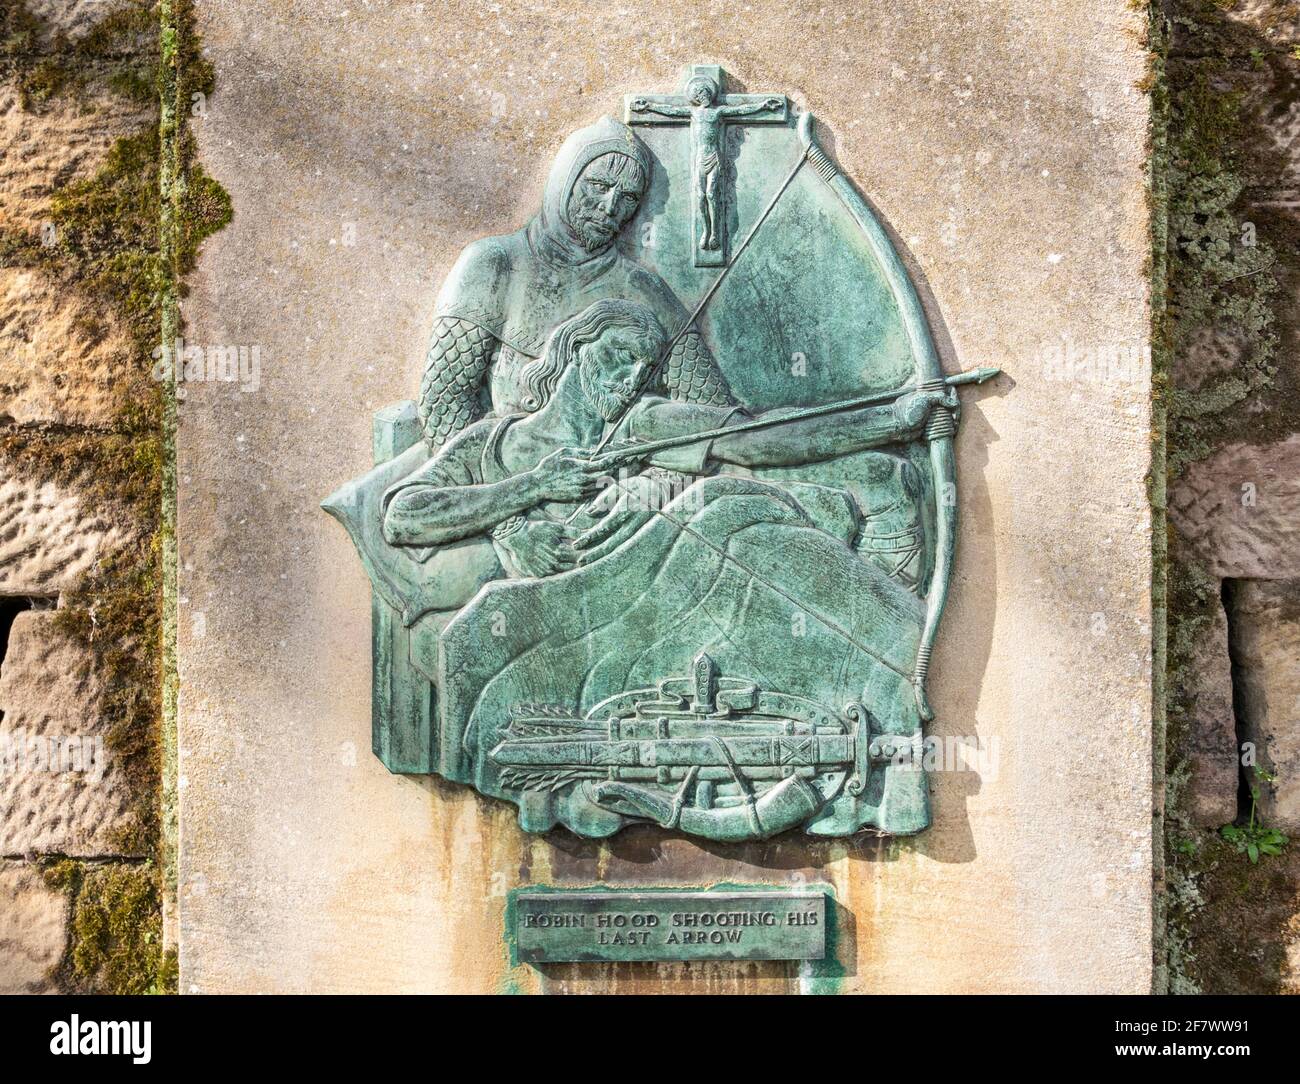 Histoire Frieze représentant la légende de Robin Hood qui a tiré sur lui Dernière flèche sur les murs extérieurs du château de Nottingham Angleterre GB Royaume-Uni Europe Banque D'Images